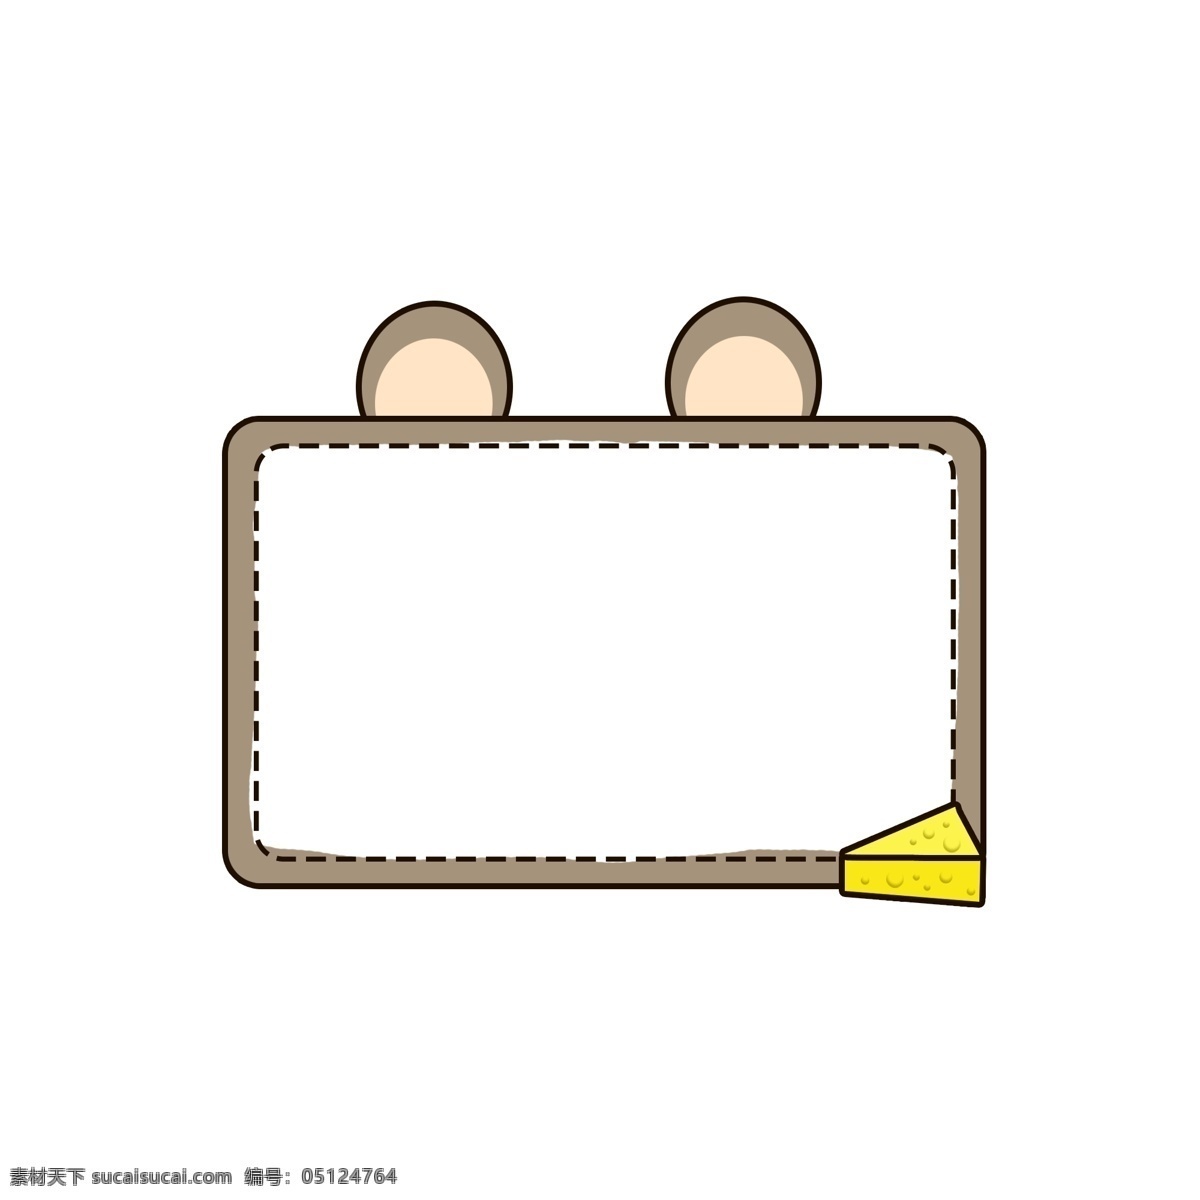 卡通 可爱 动物 老鼠 奶酪 边框 小老鼠 鼠 矢量 灰色 黄色 对话框 元素